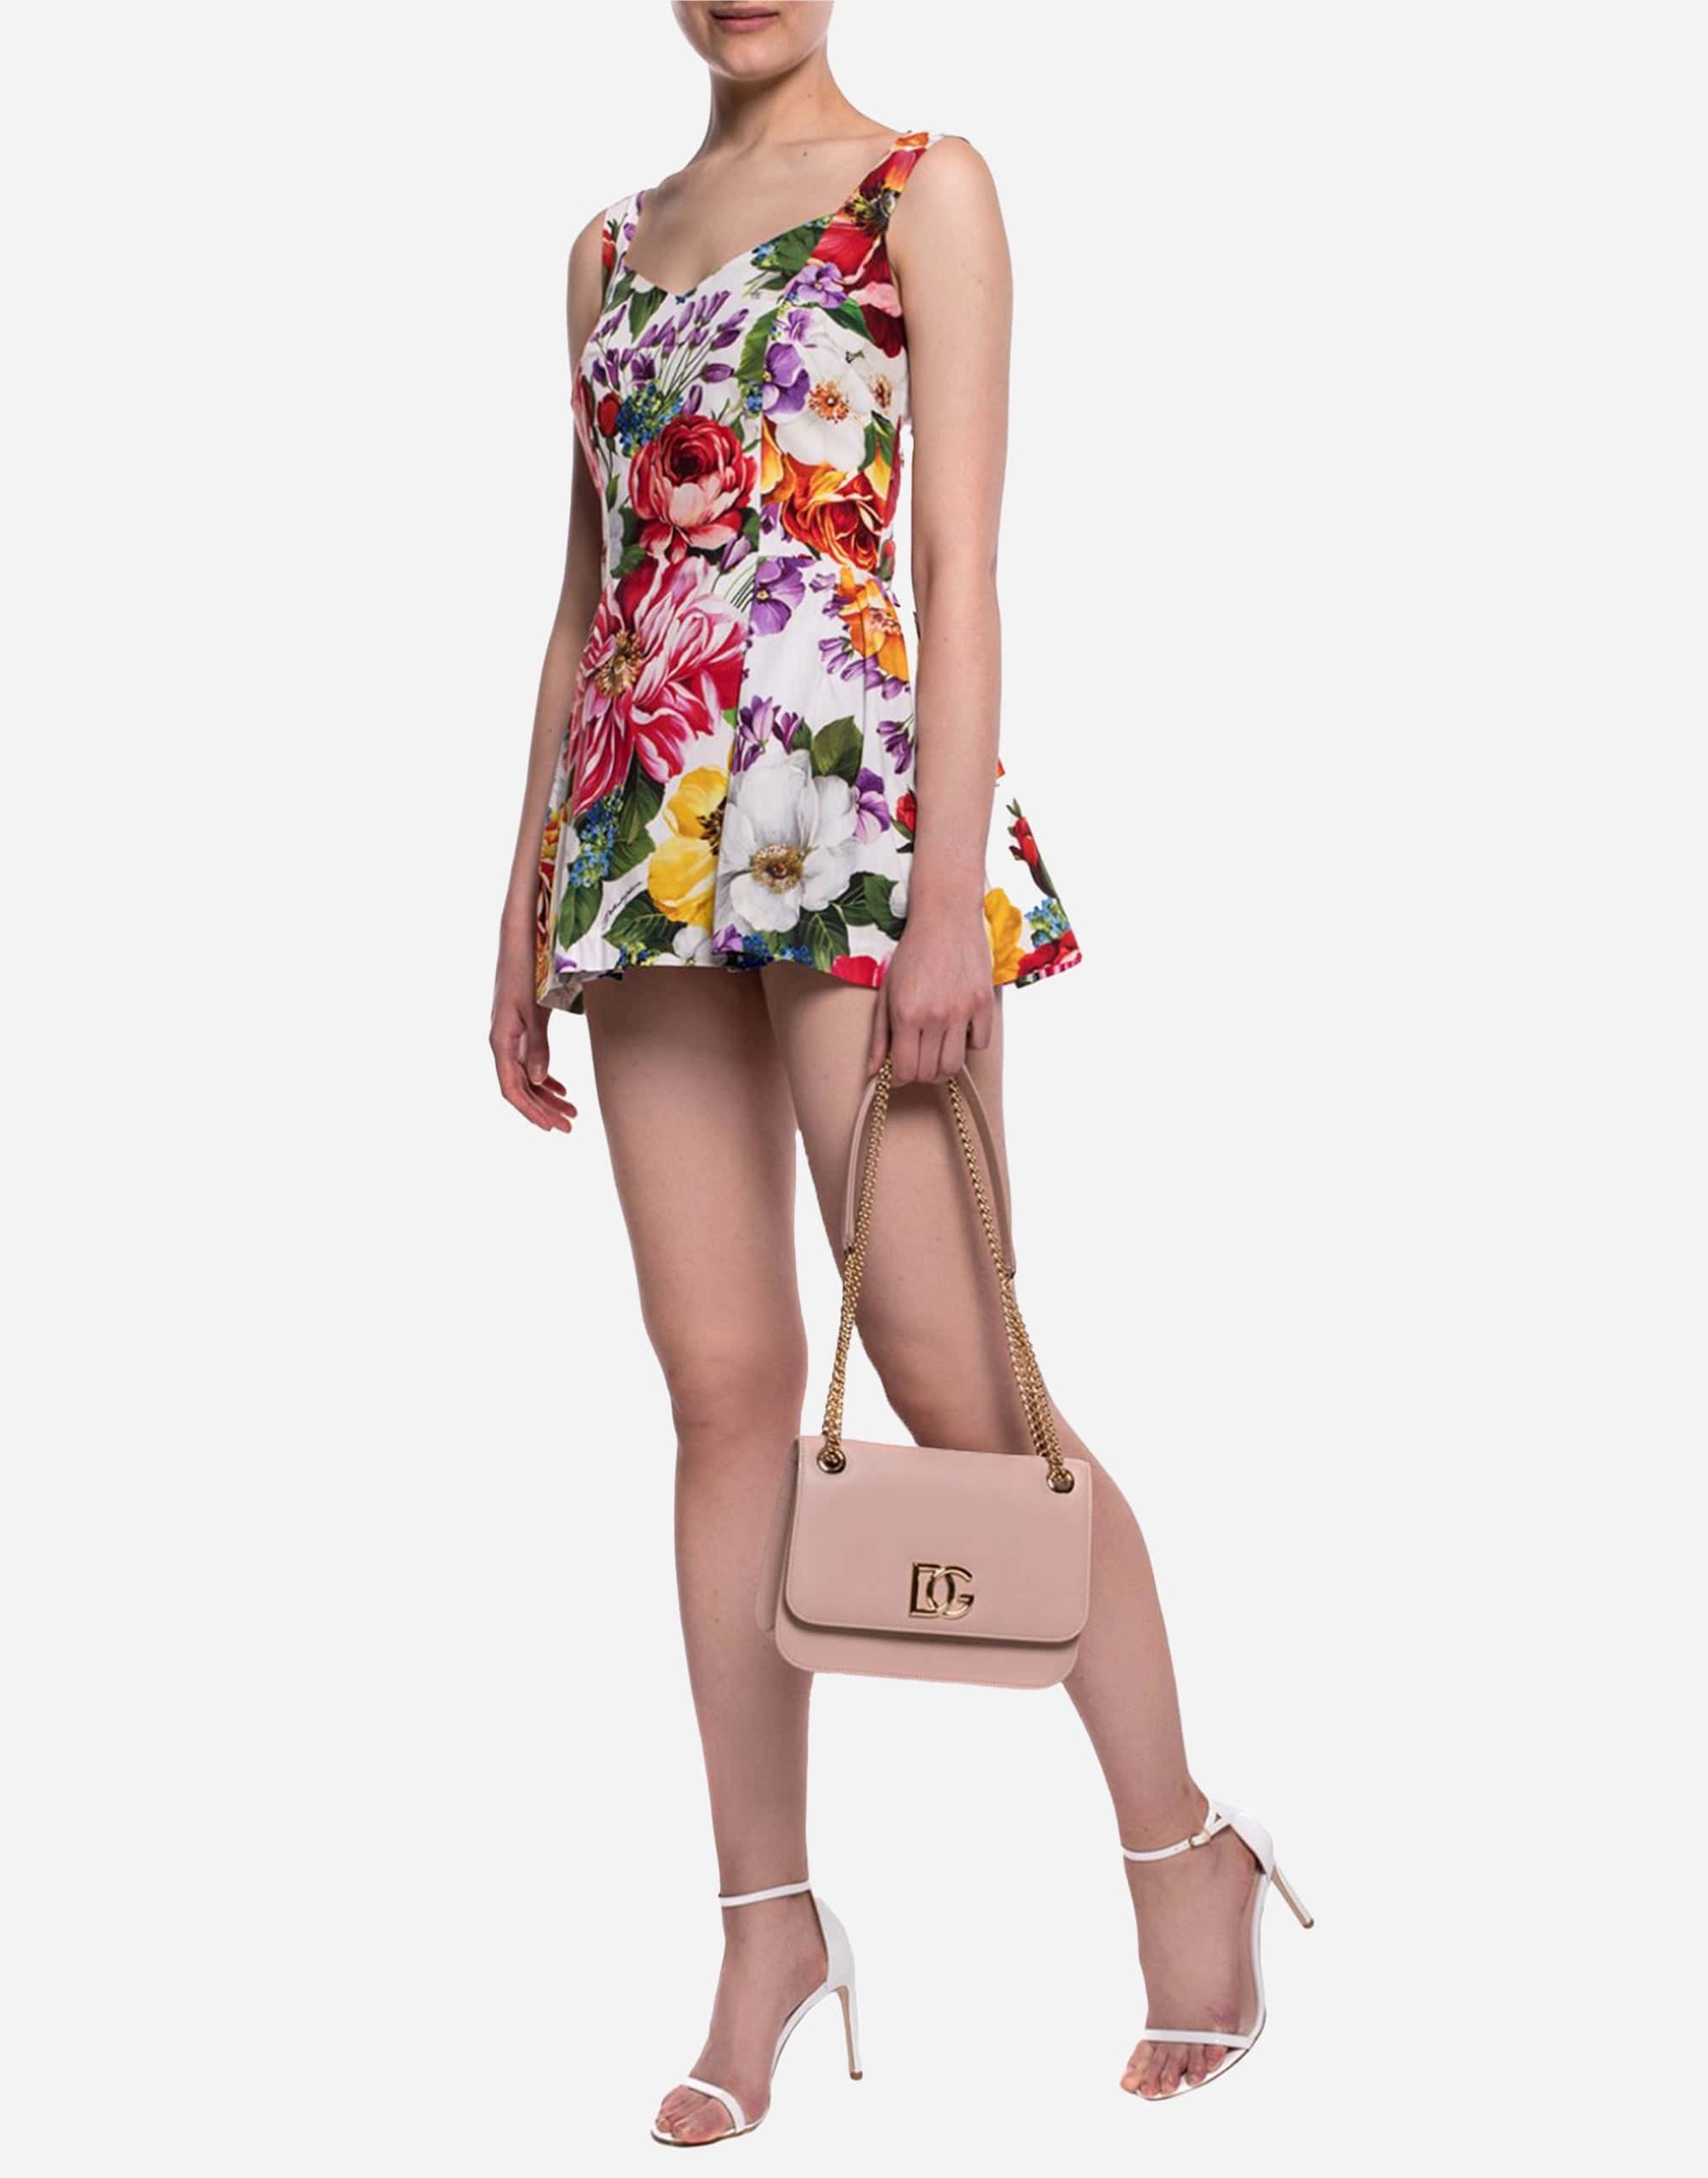 Dolce & Gabbana Multicolor Floral Print Cotton Body Suit Top